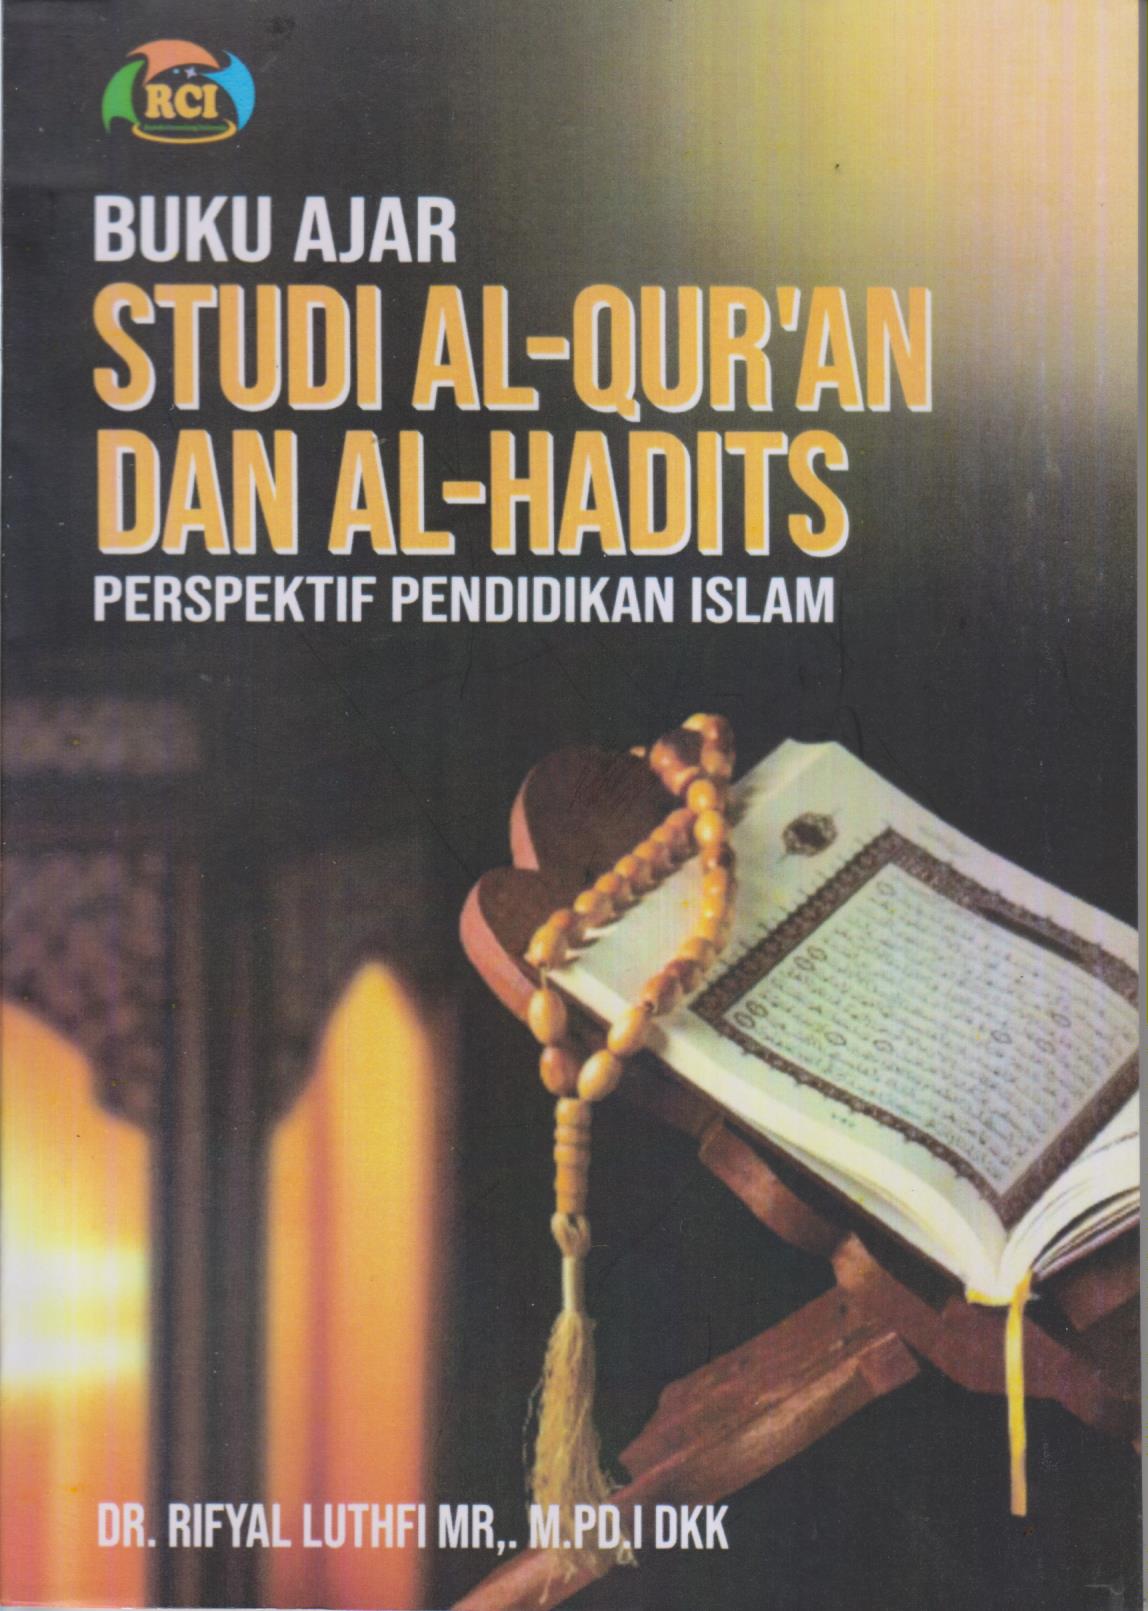 BUKU AJAR STUDI AL-QUR'AN DAN AL- HADIT'S